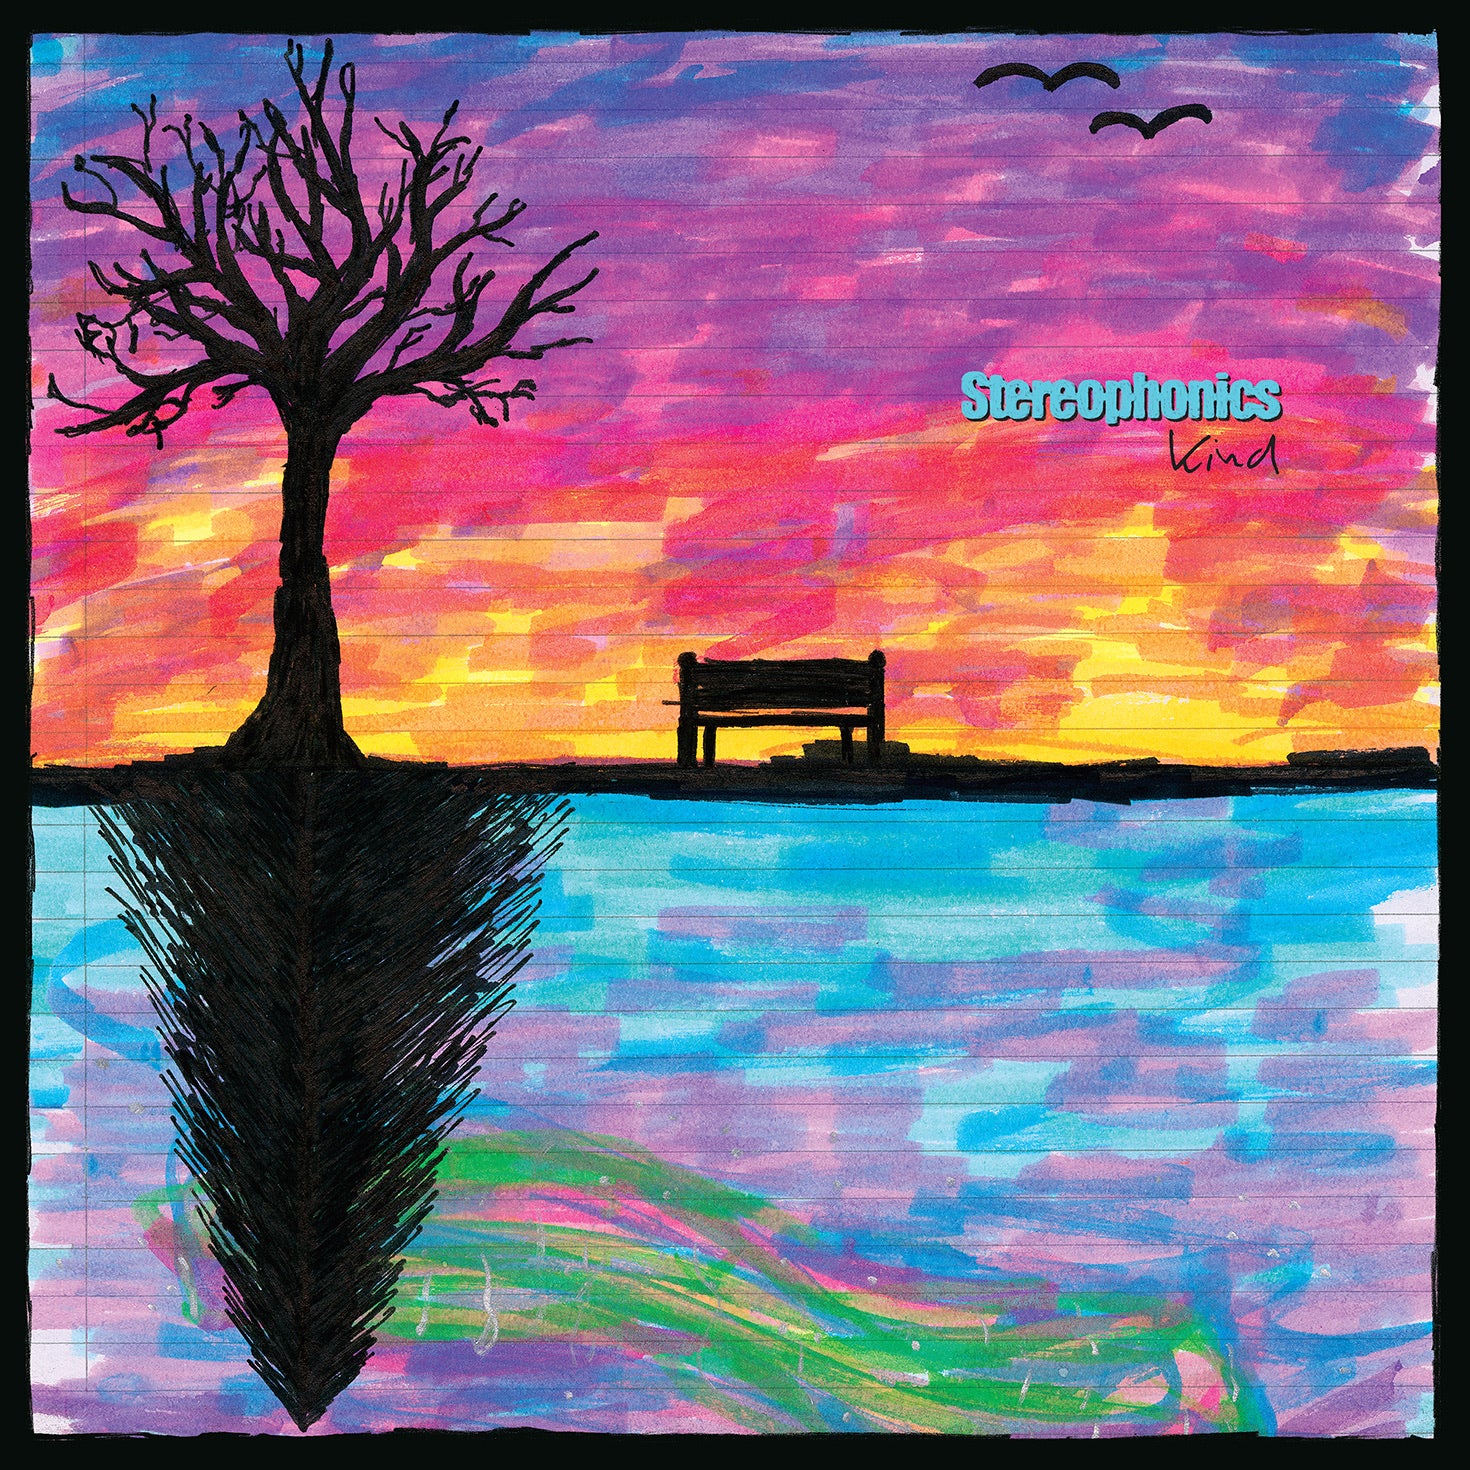 Stereophonics - Kind - Pink Vinyl